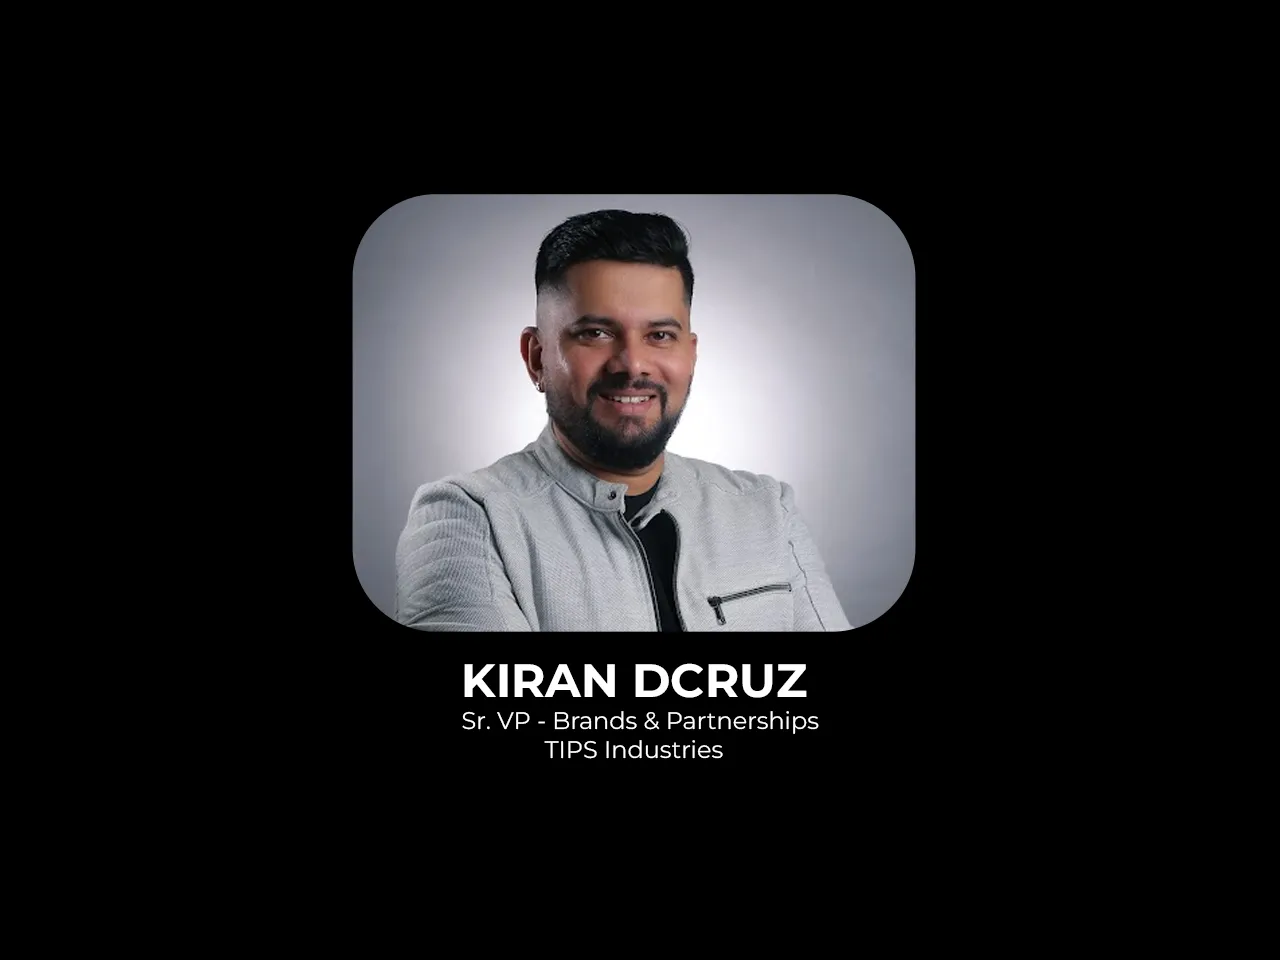 Kiran Dcruz